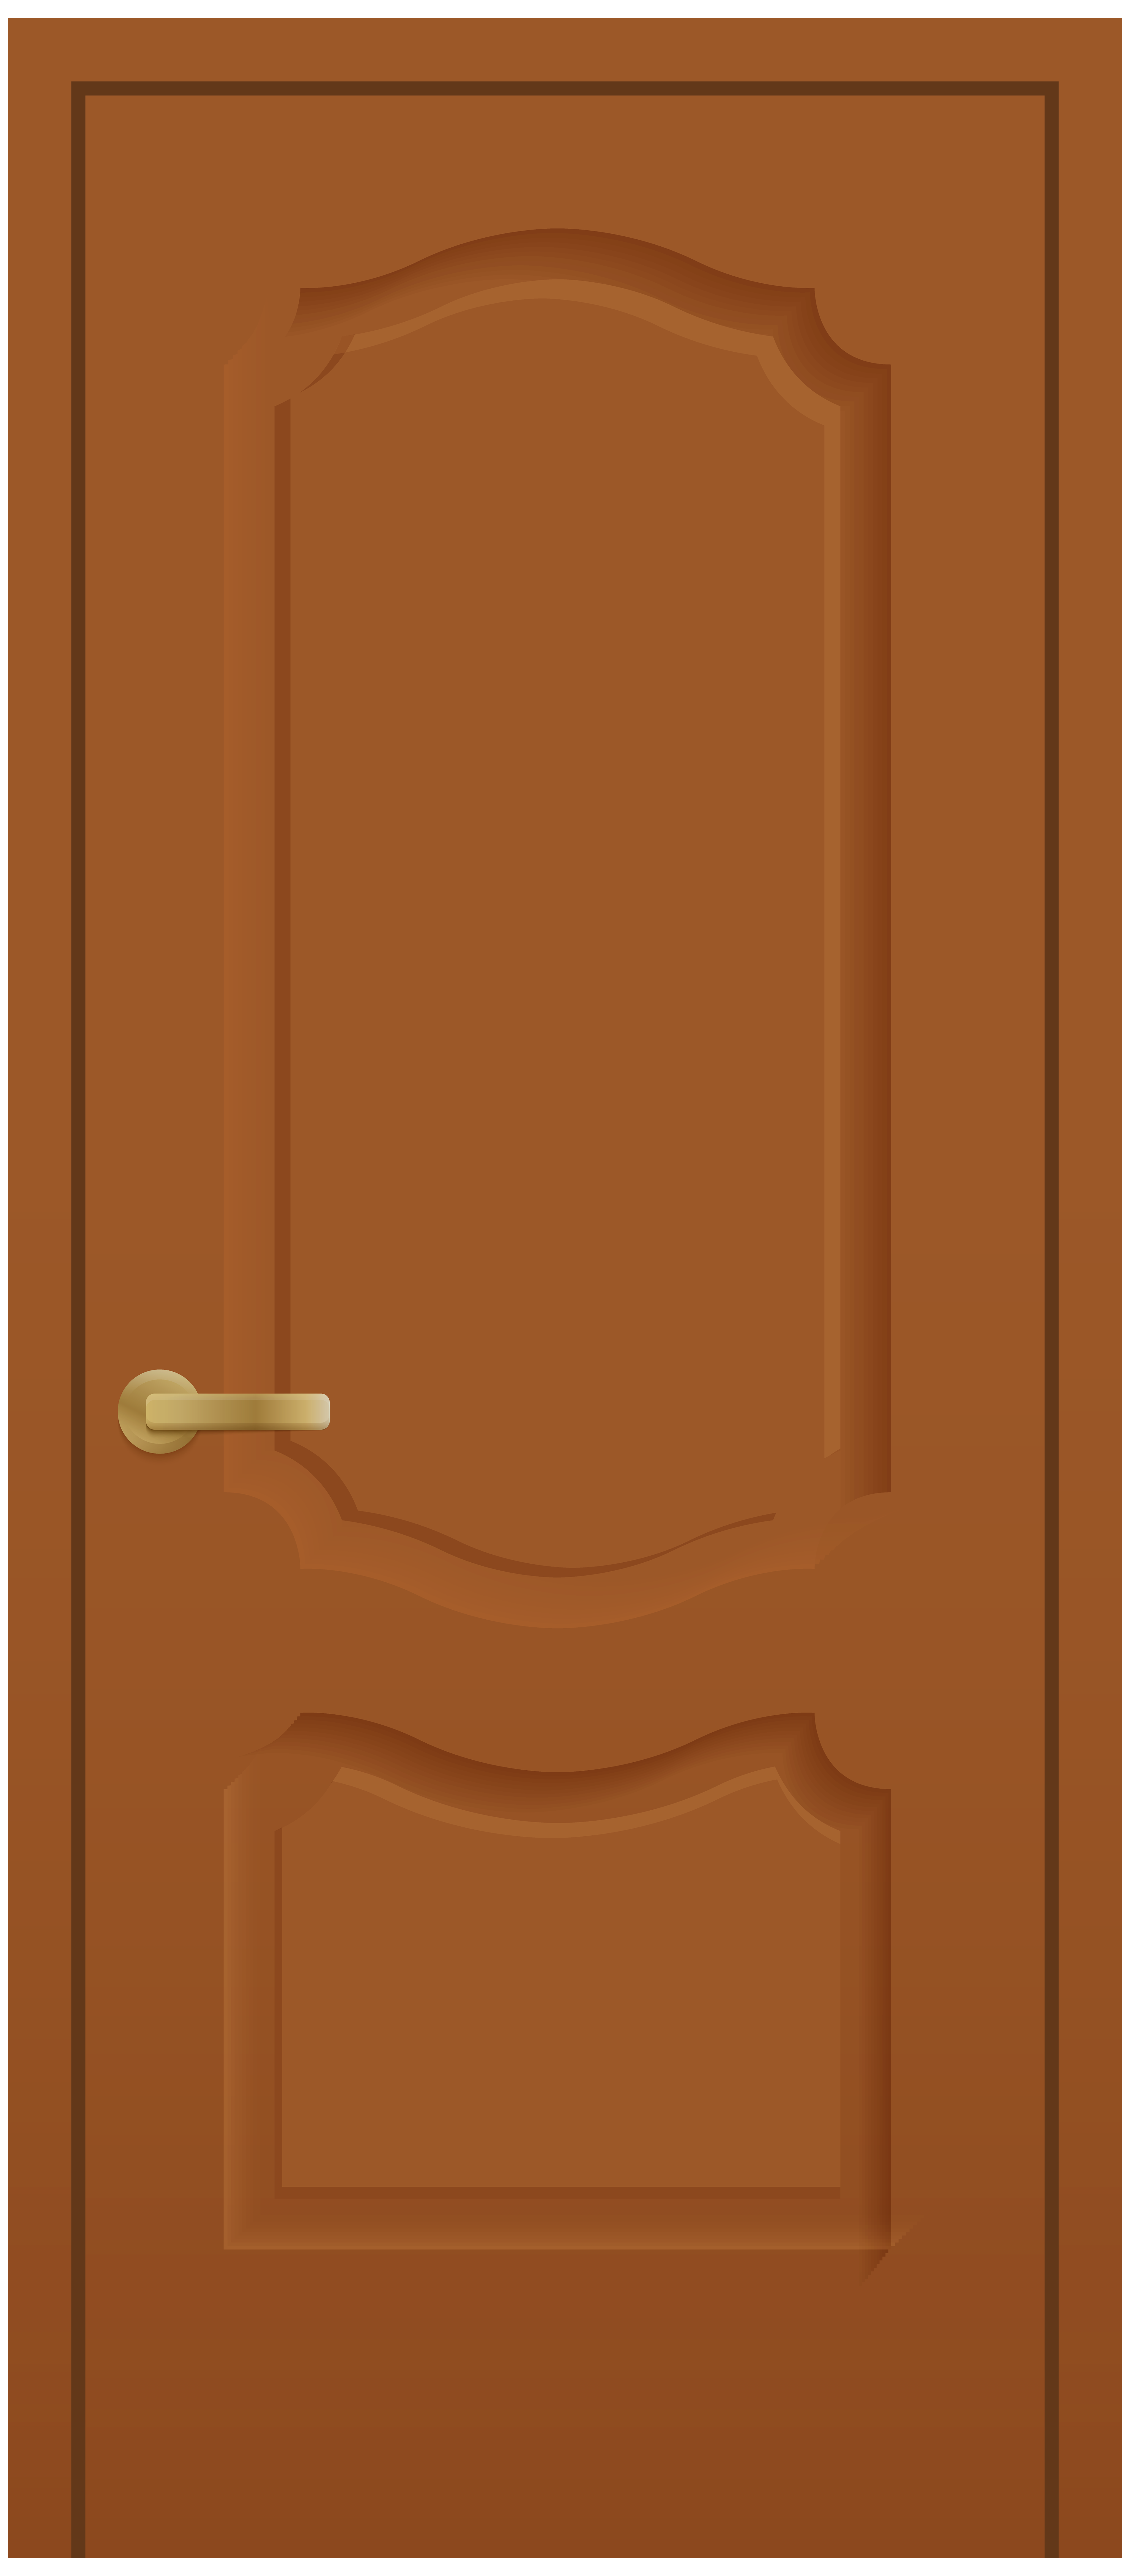 Door Clip Art